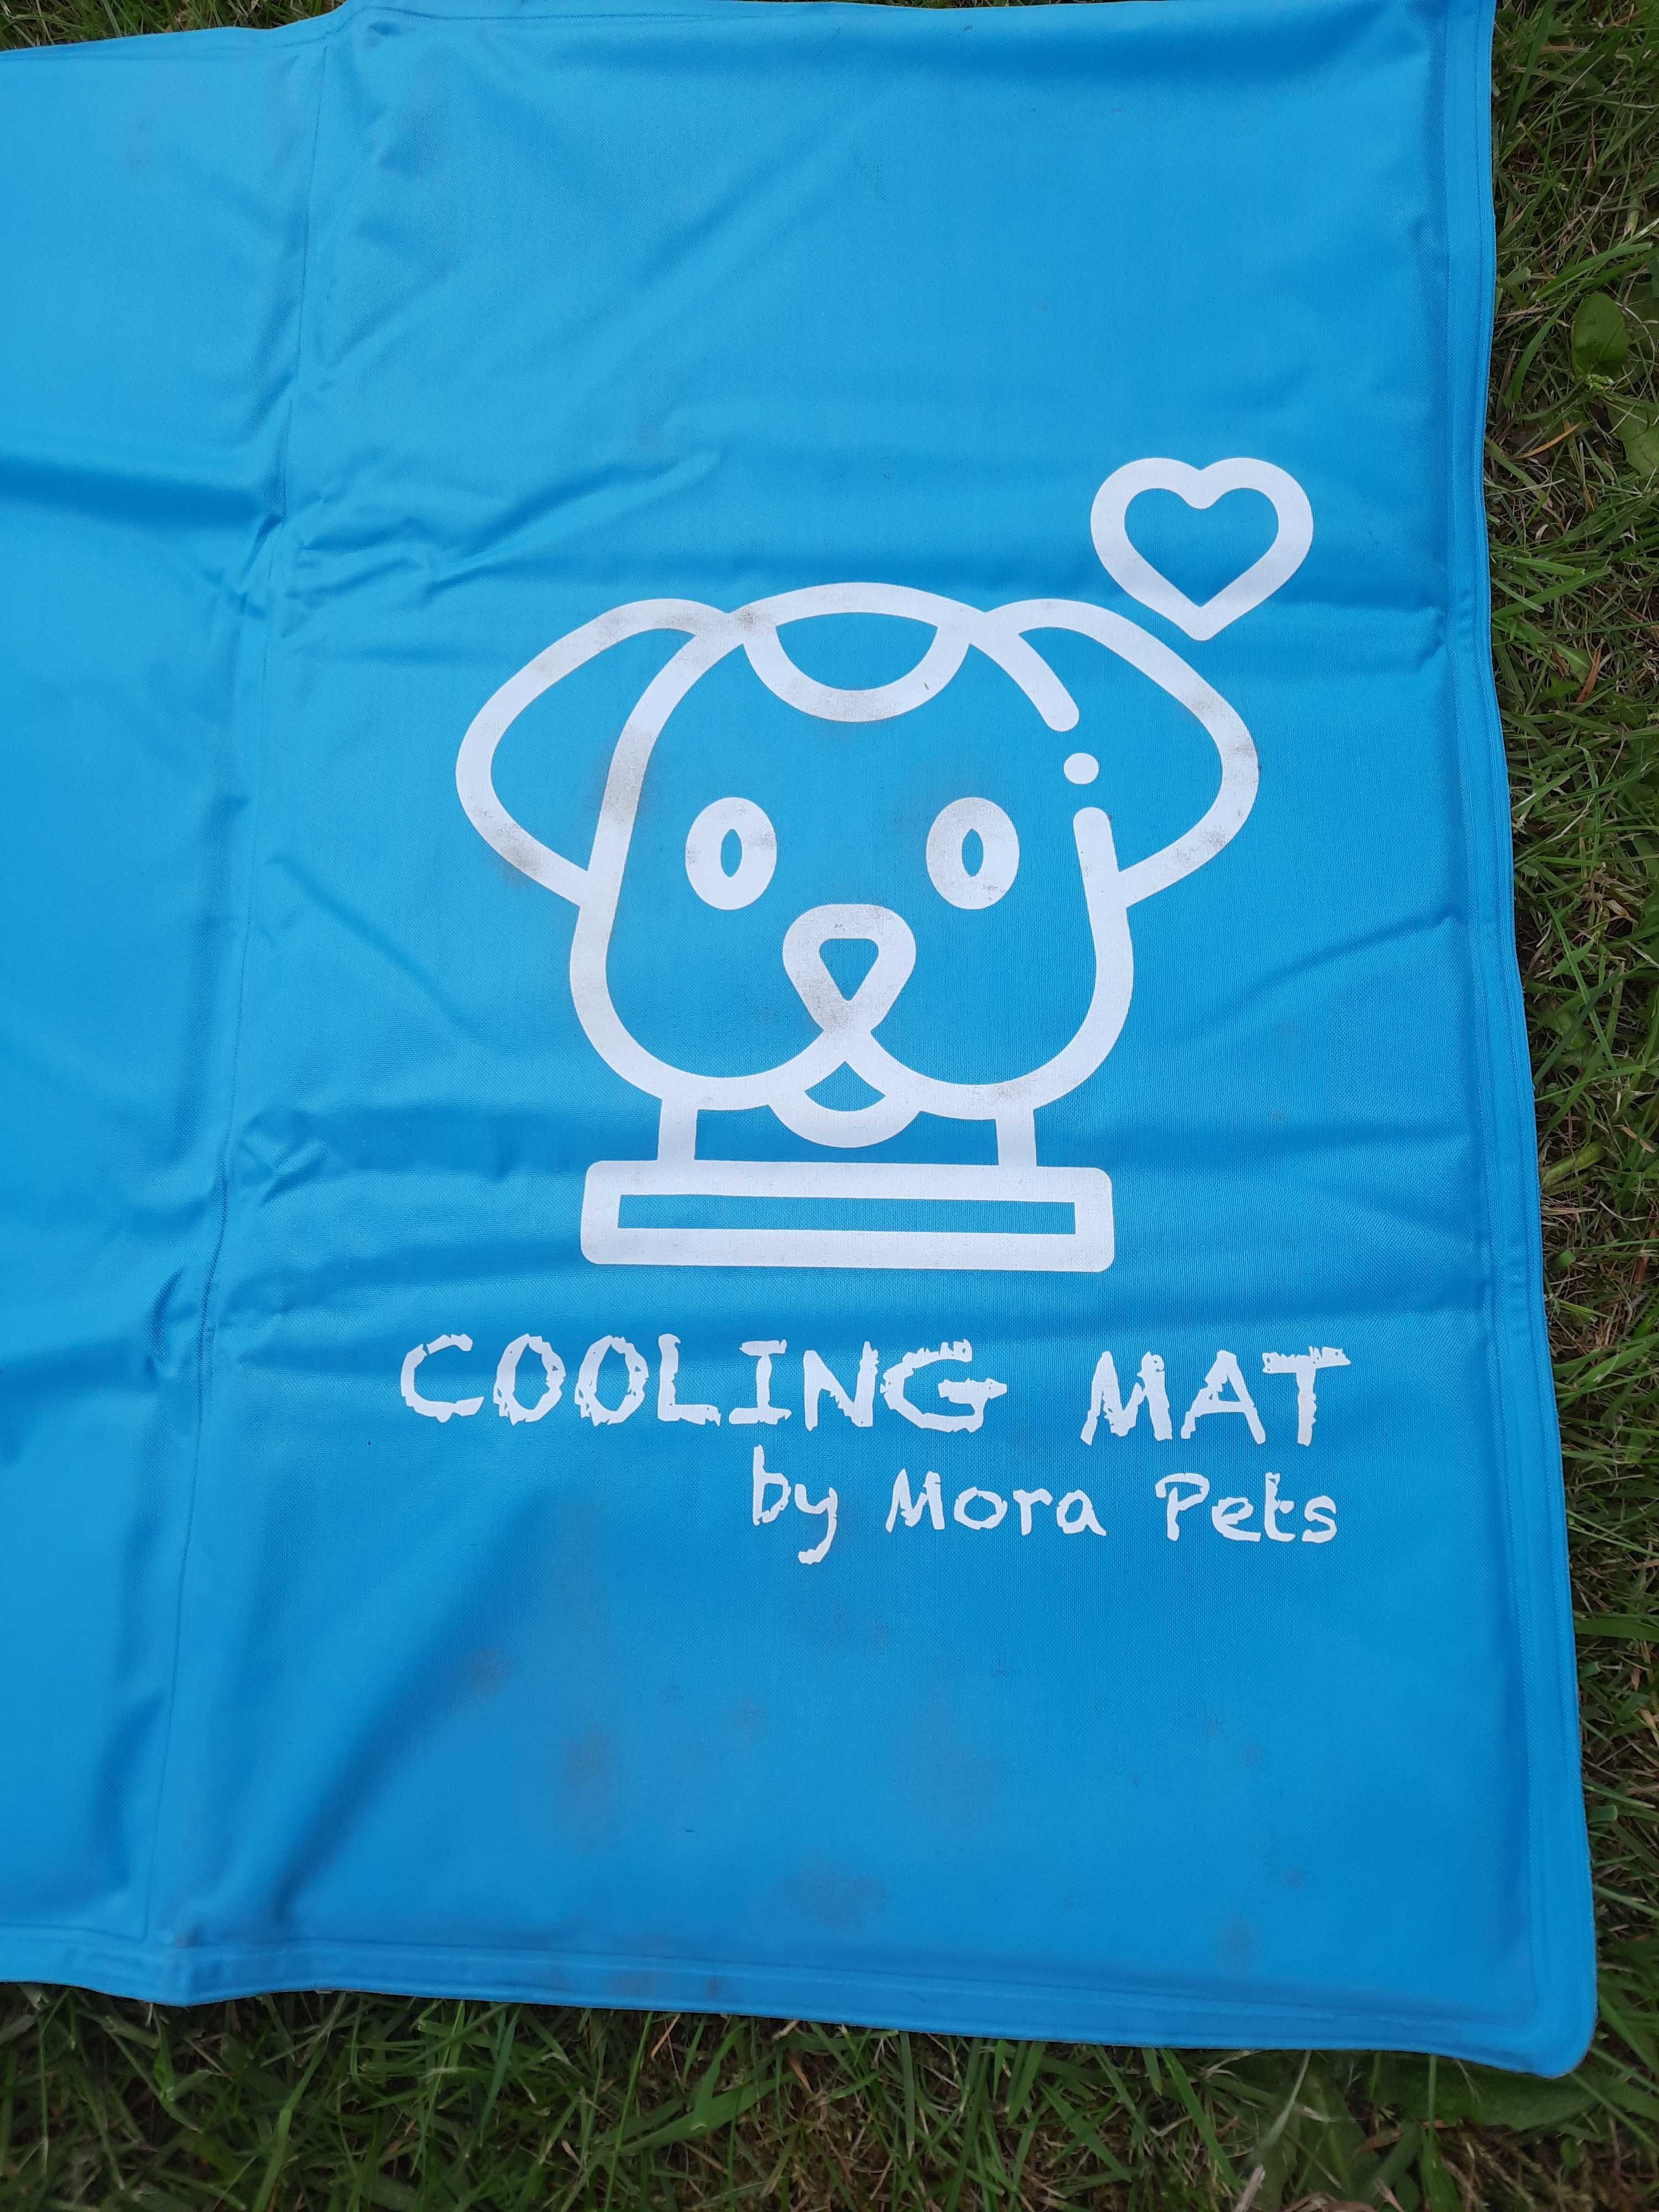 Chłodząca mata dla psa Mora Pets 50x90 cm